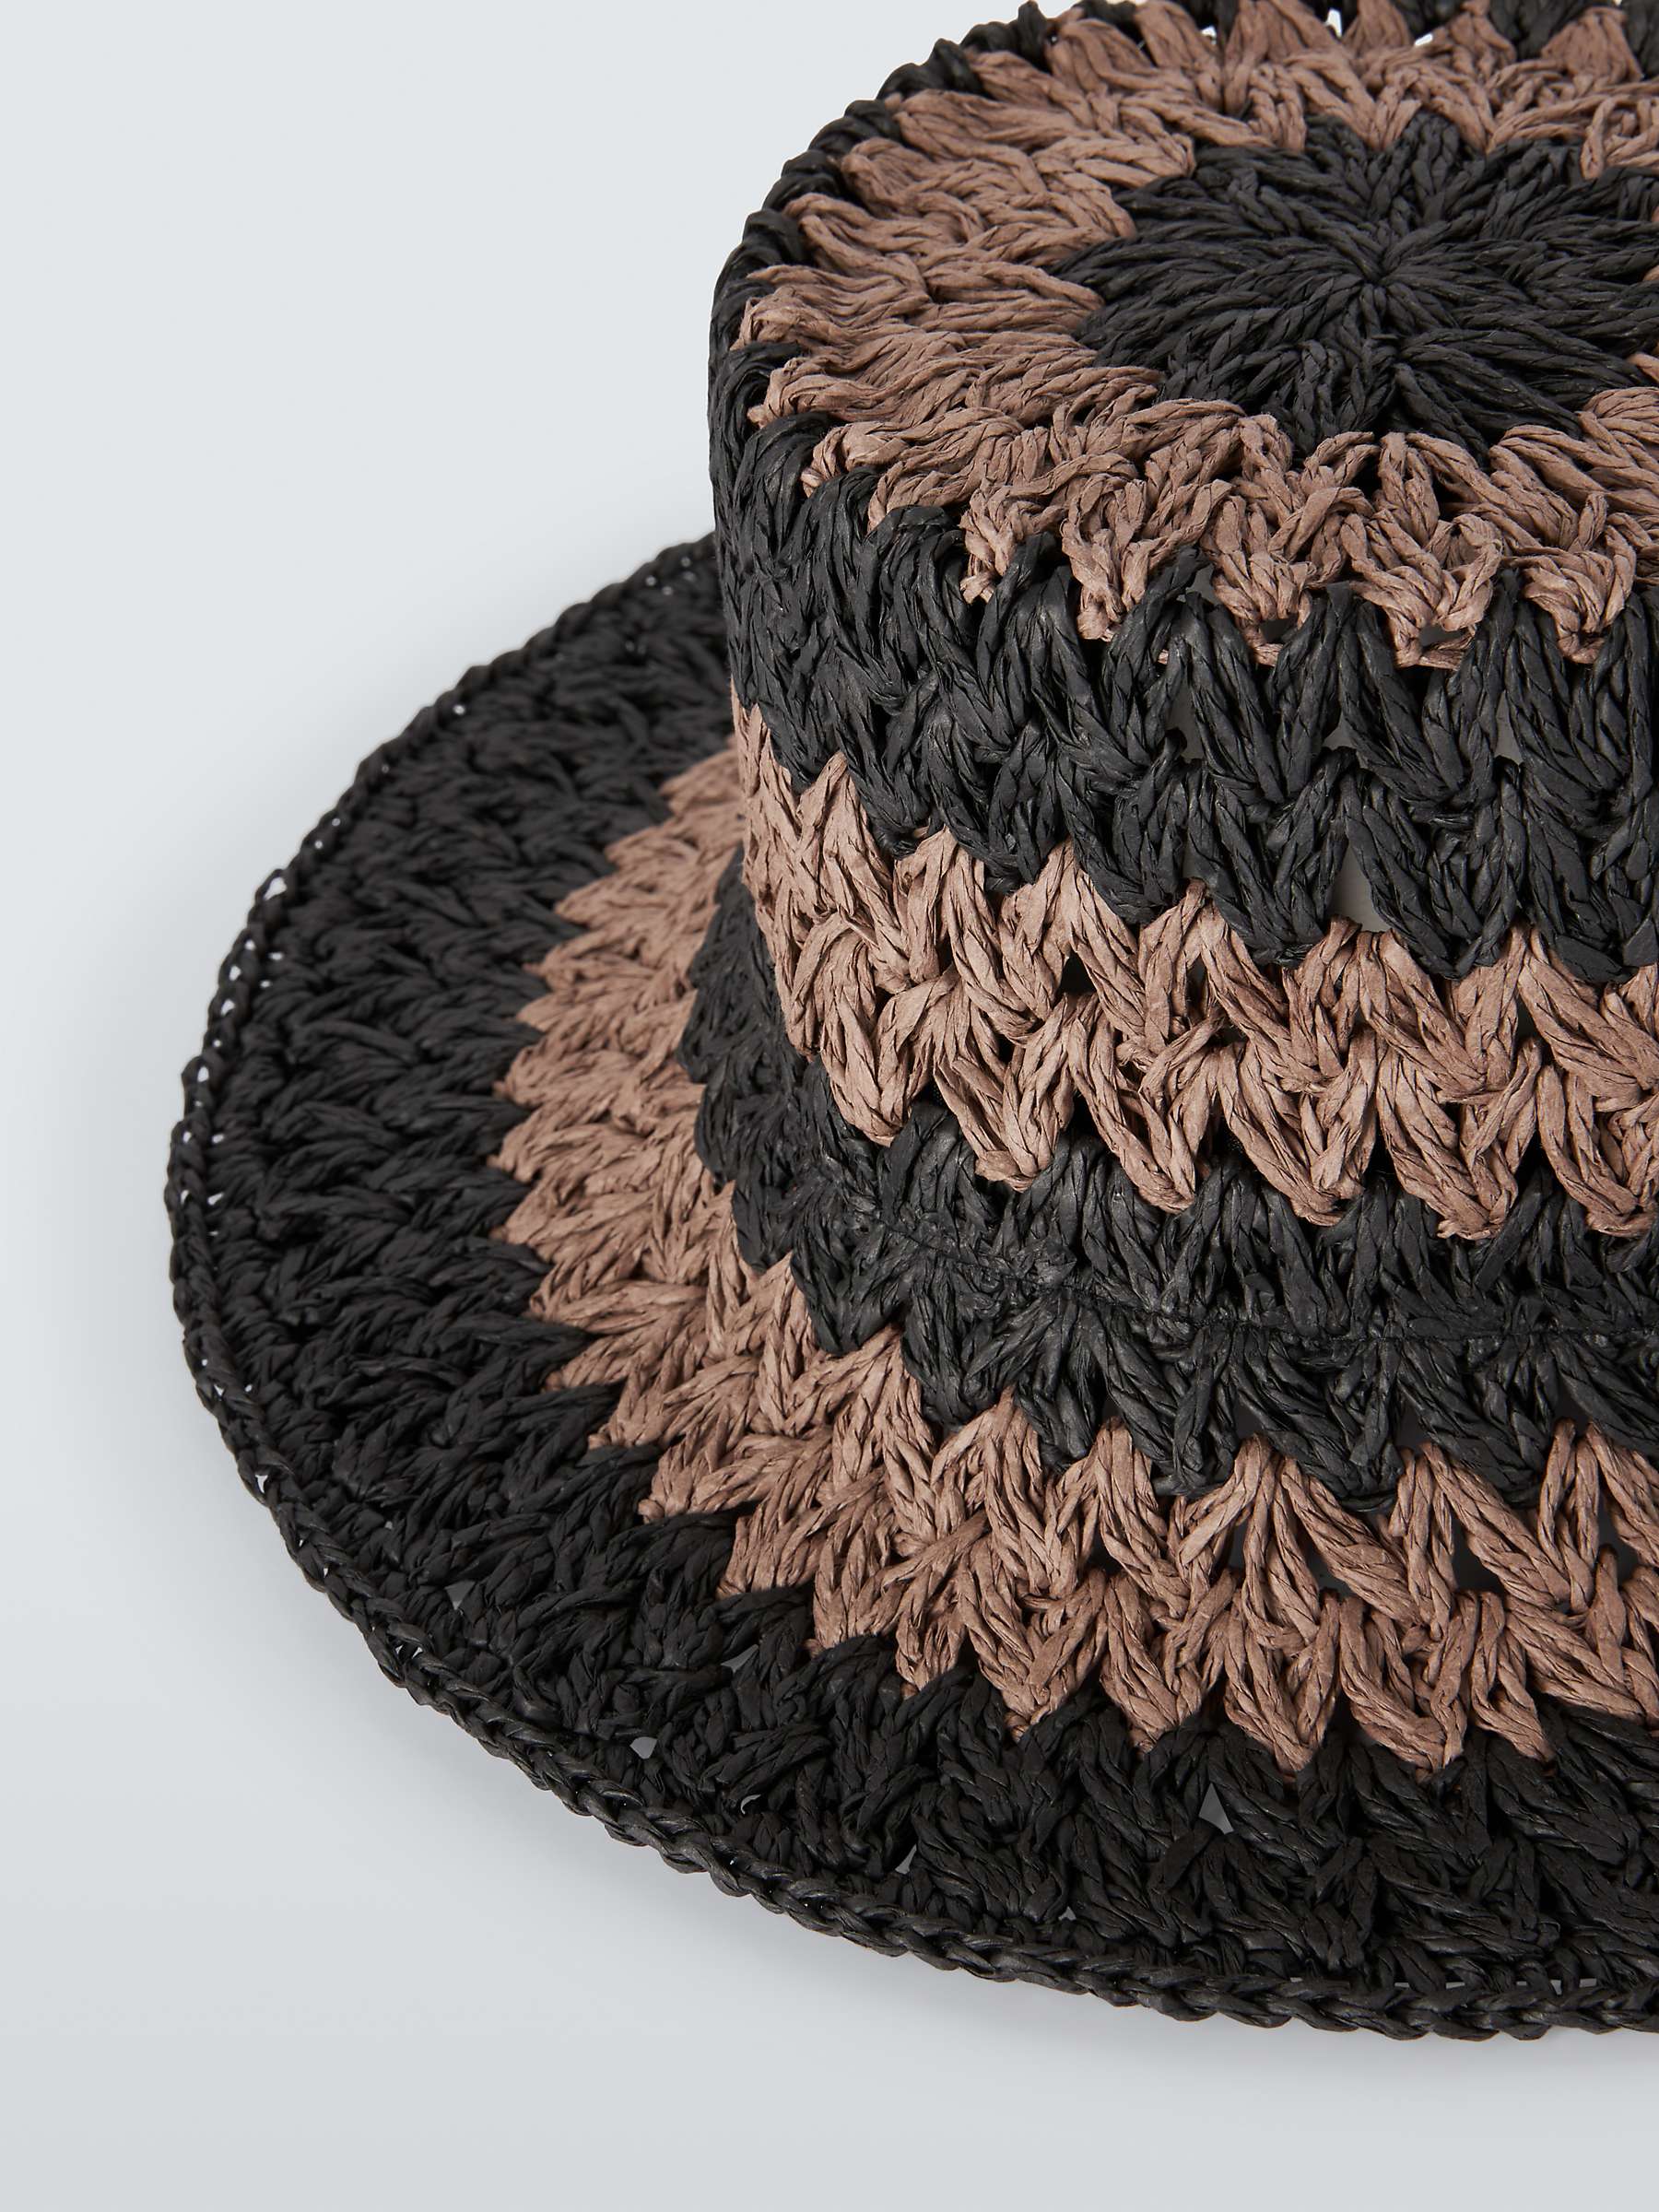 Buy John Lewis Striped Crochet Hat, FSC-Certified, Black/Natural Online at johnlewis.com